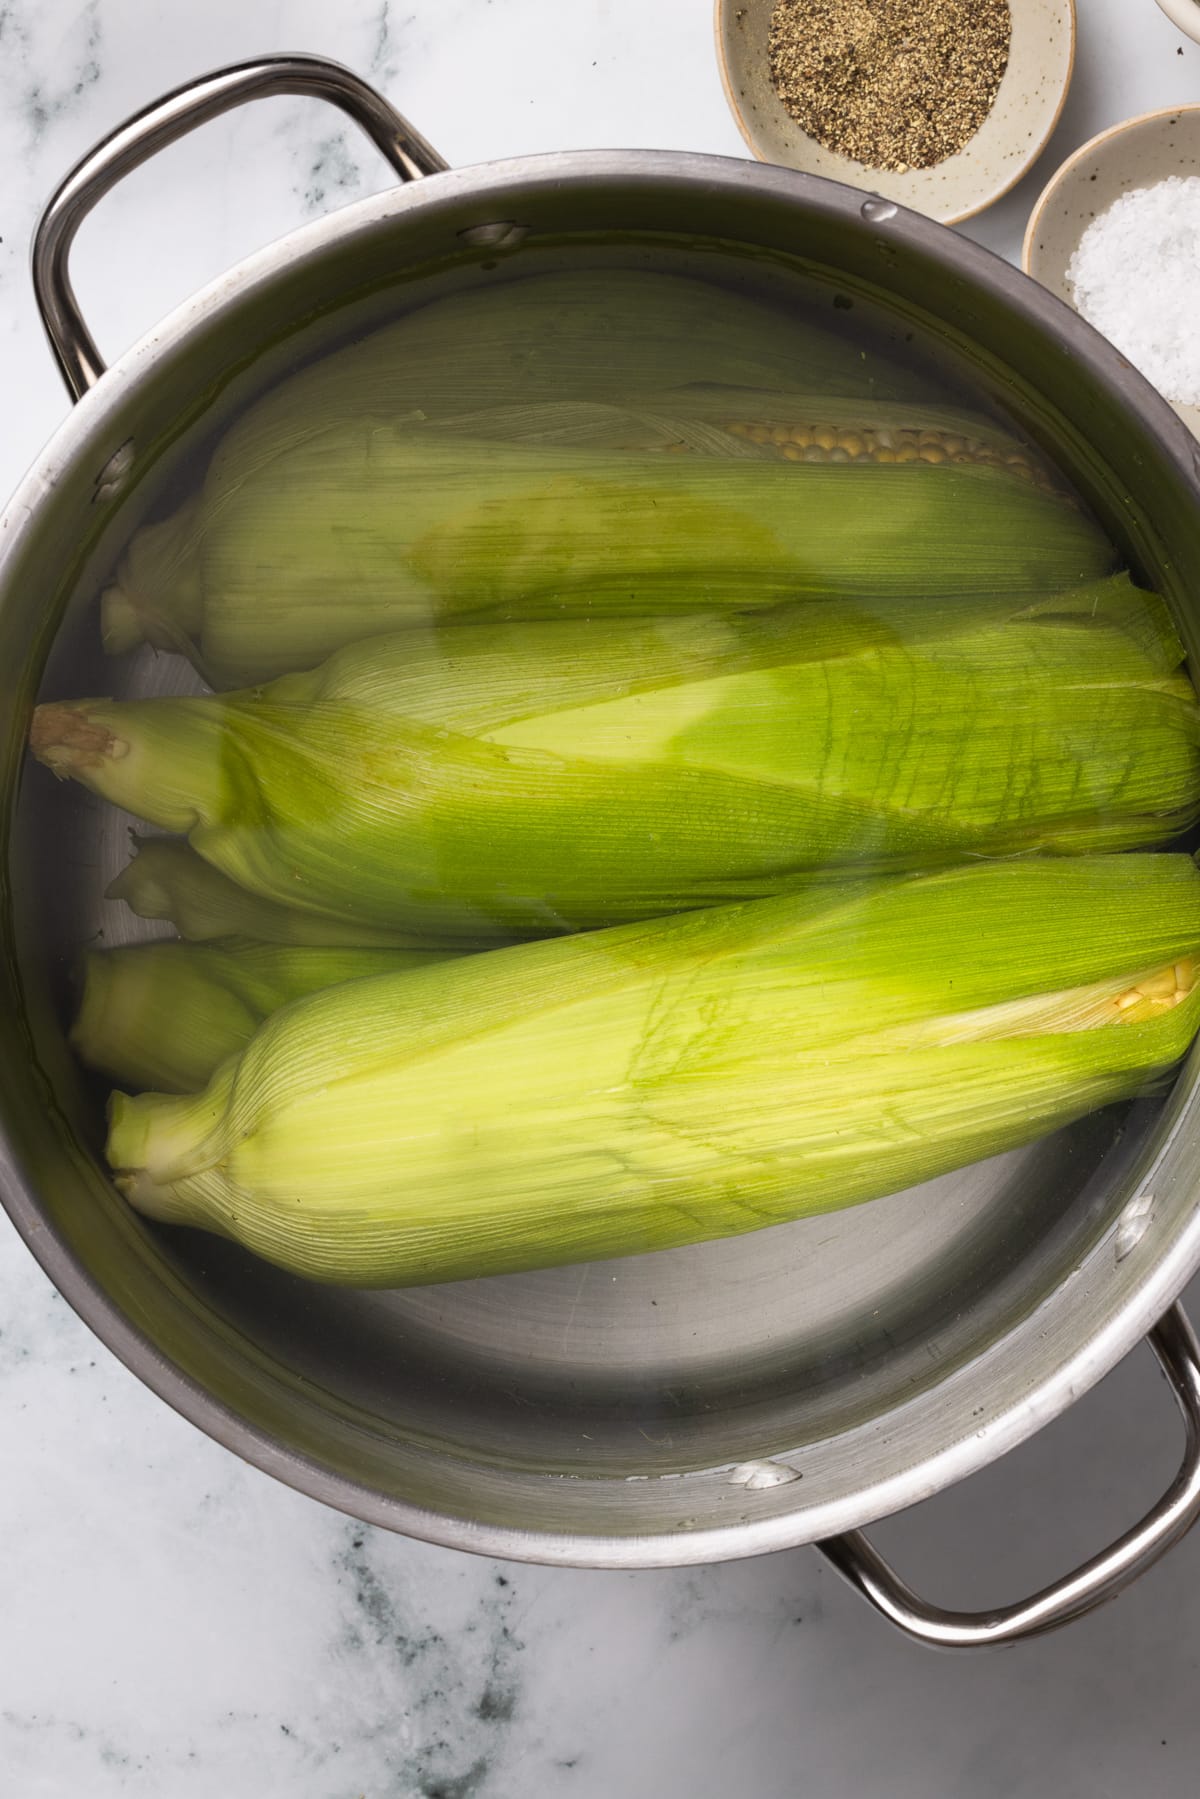 soaking corn in water